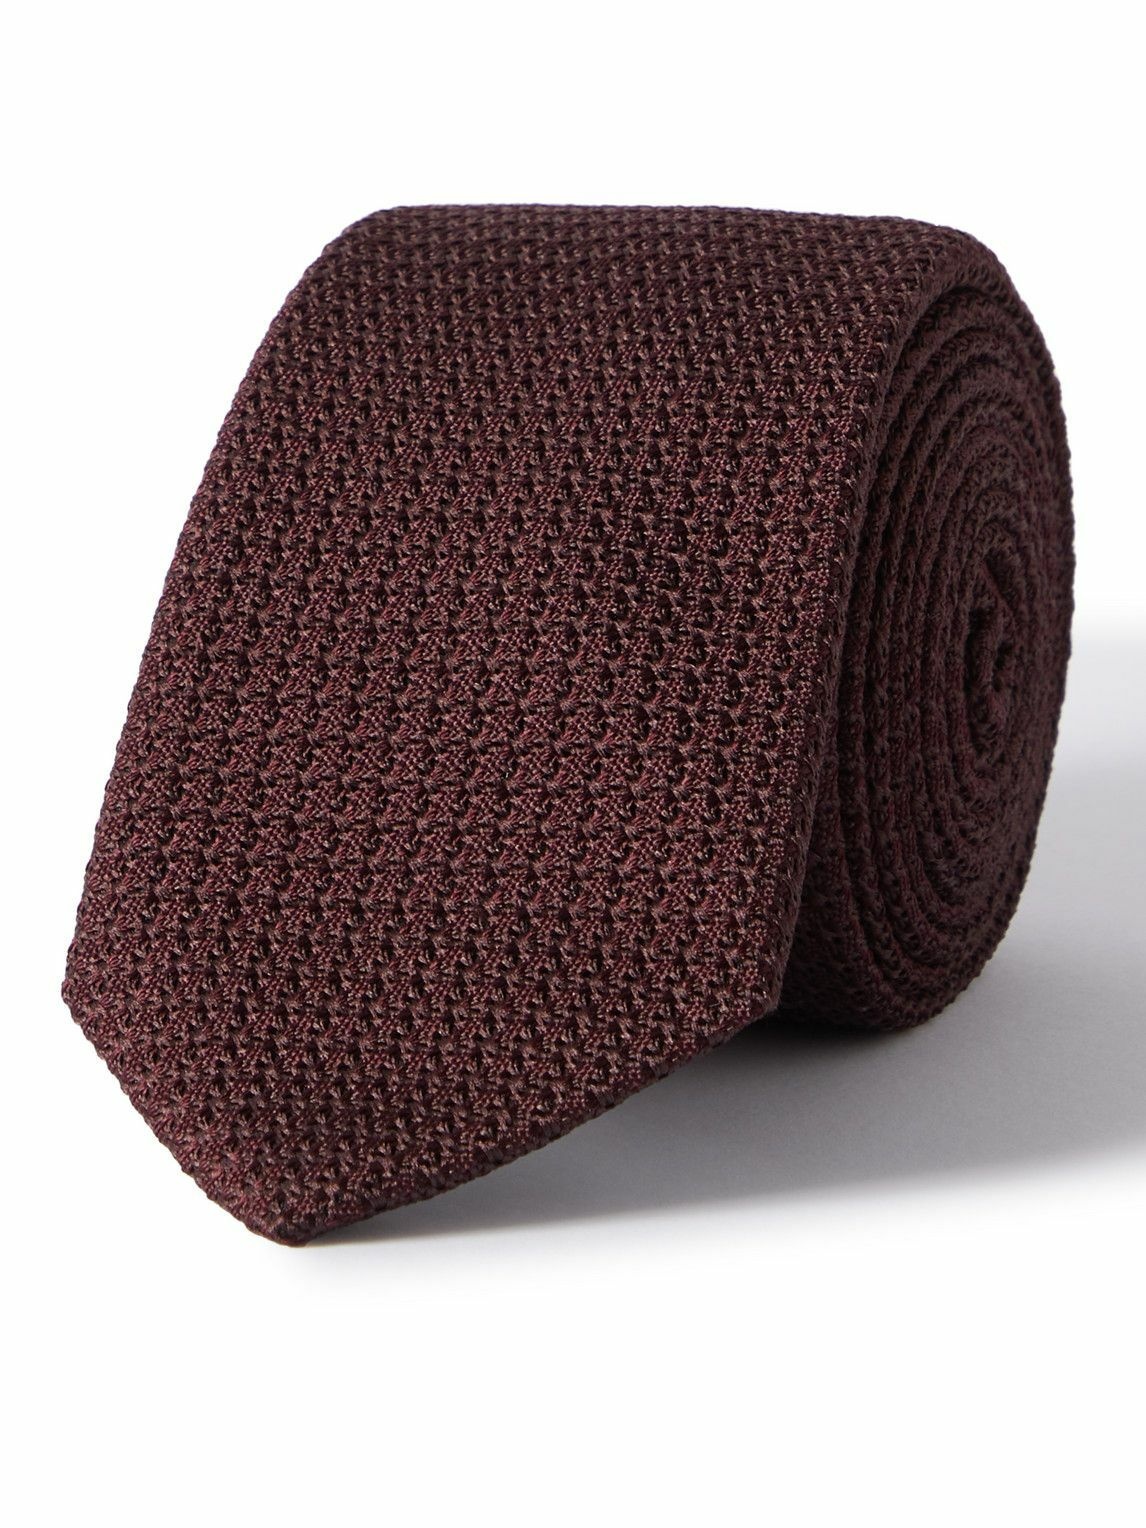 Photo: Lanvin - 7cm Textured-Silk Tie